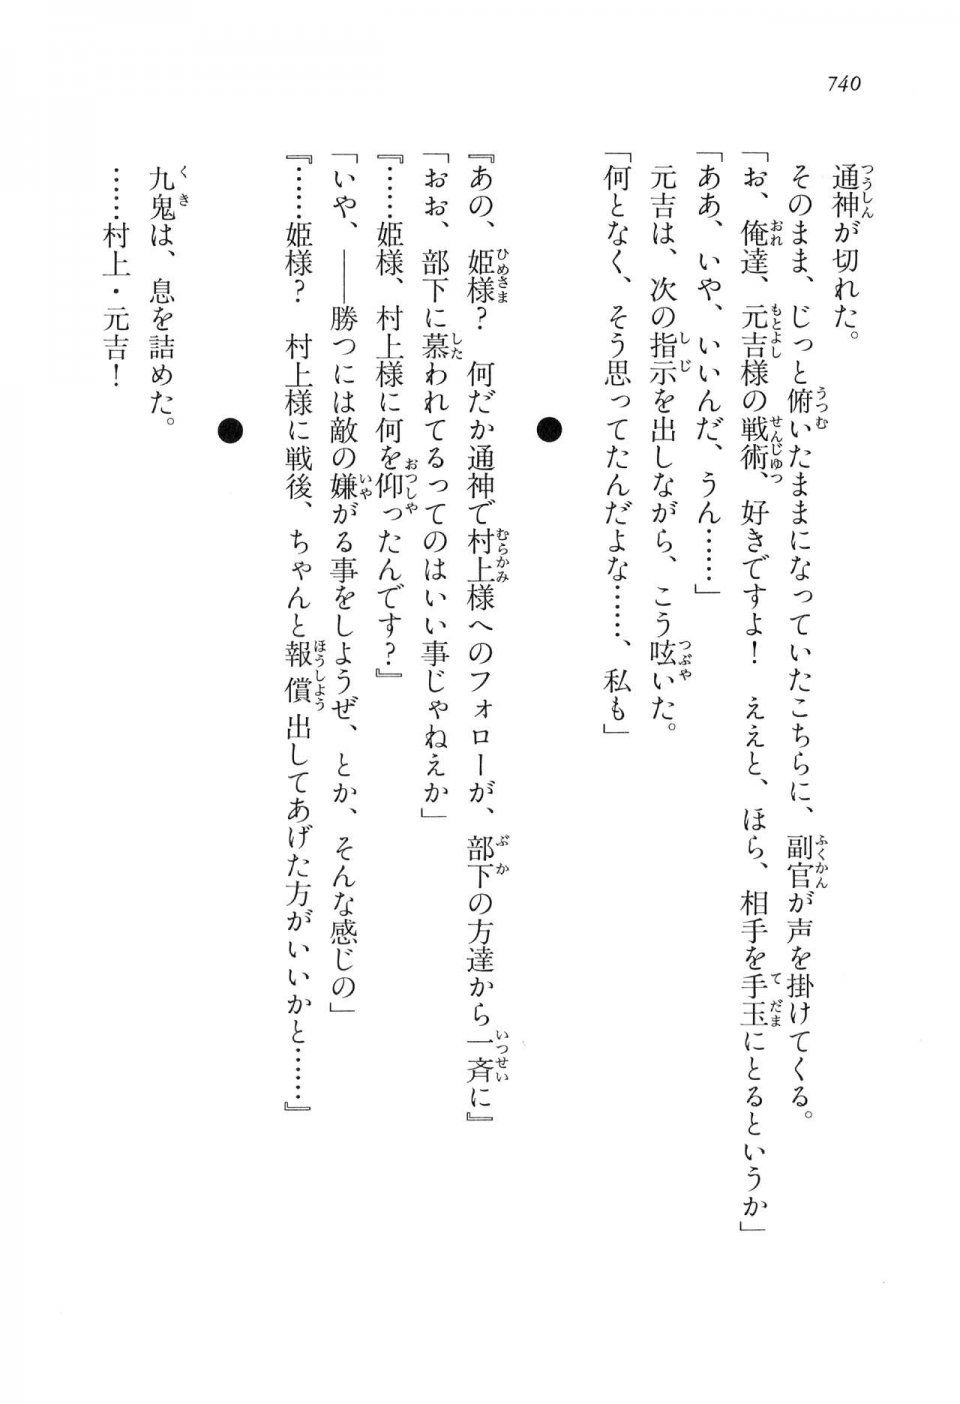 Kyoukai Senjou no Horizon LN Vol 16(7A) - Photo #740